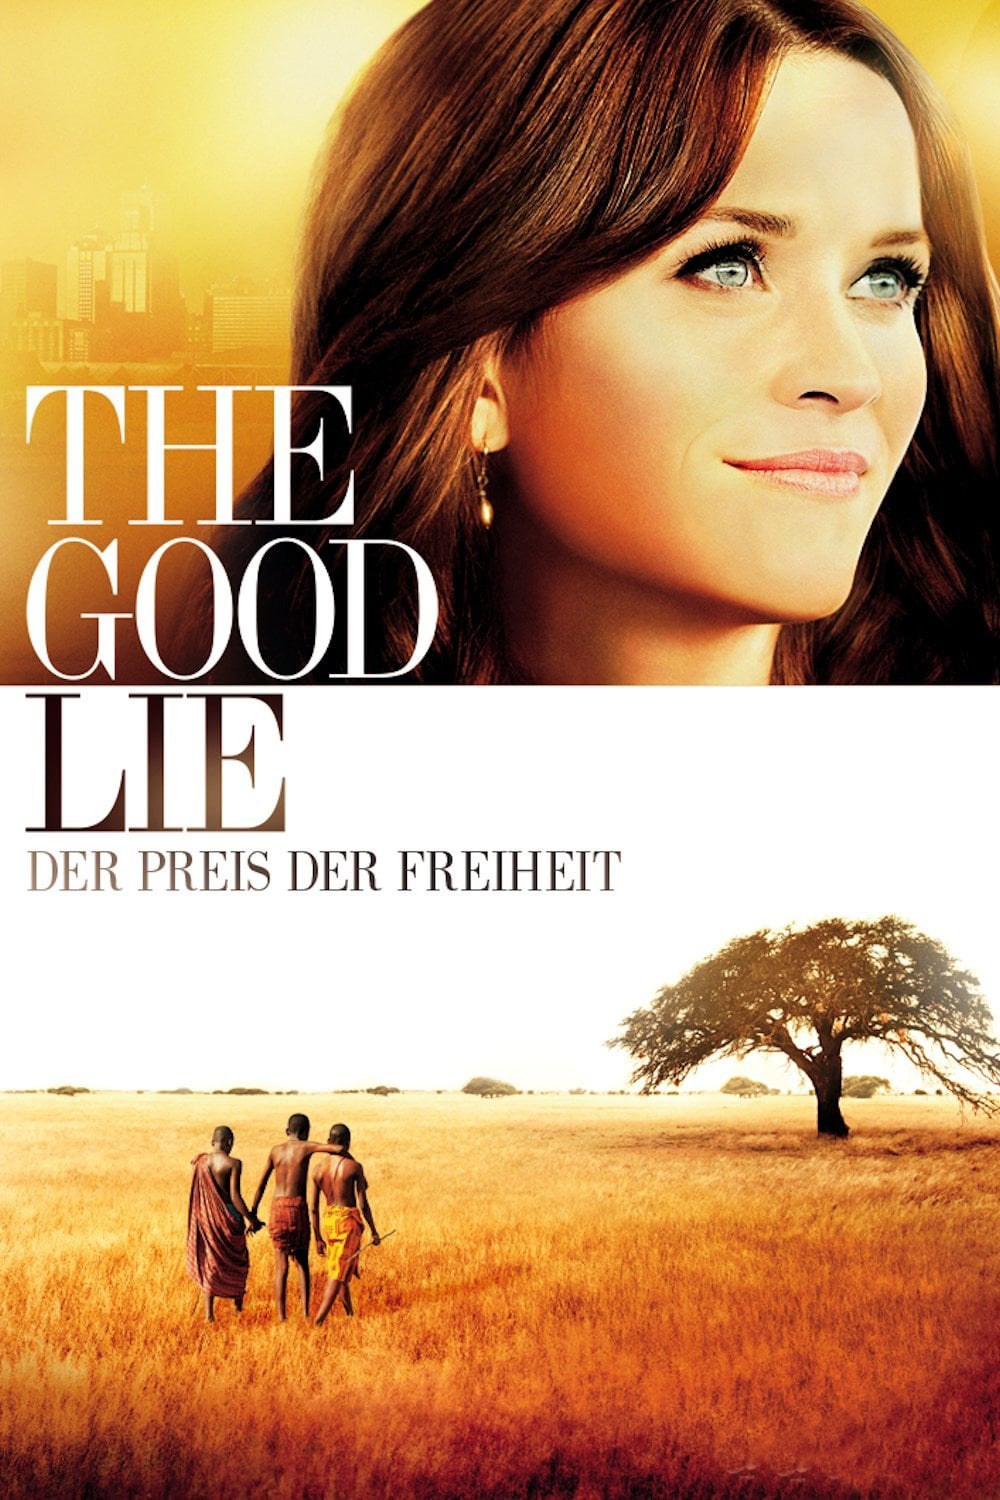 Plakat von "The Good Lie"